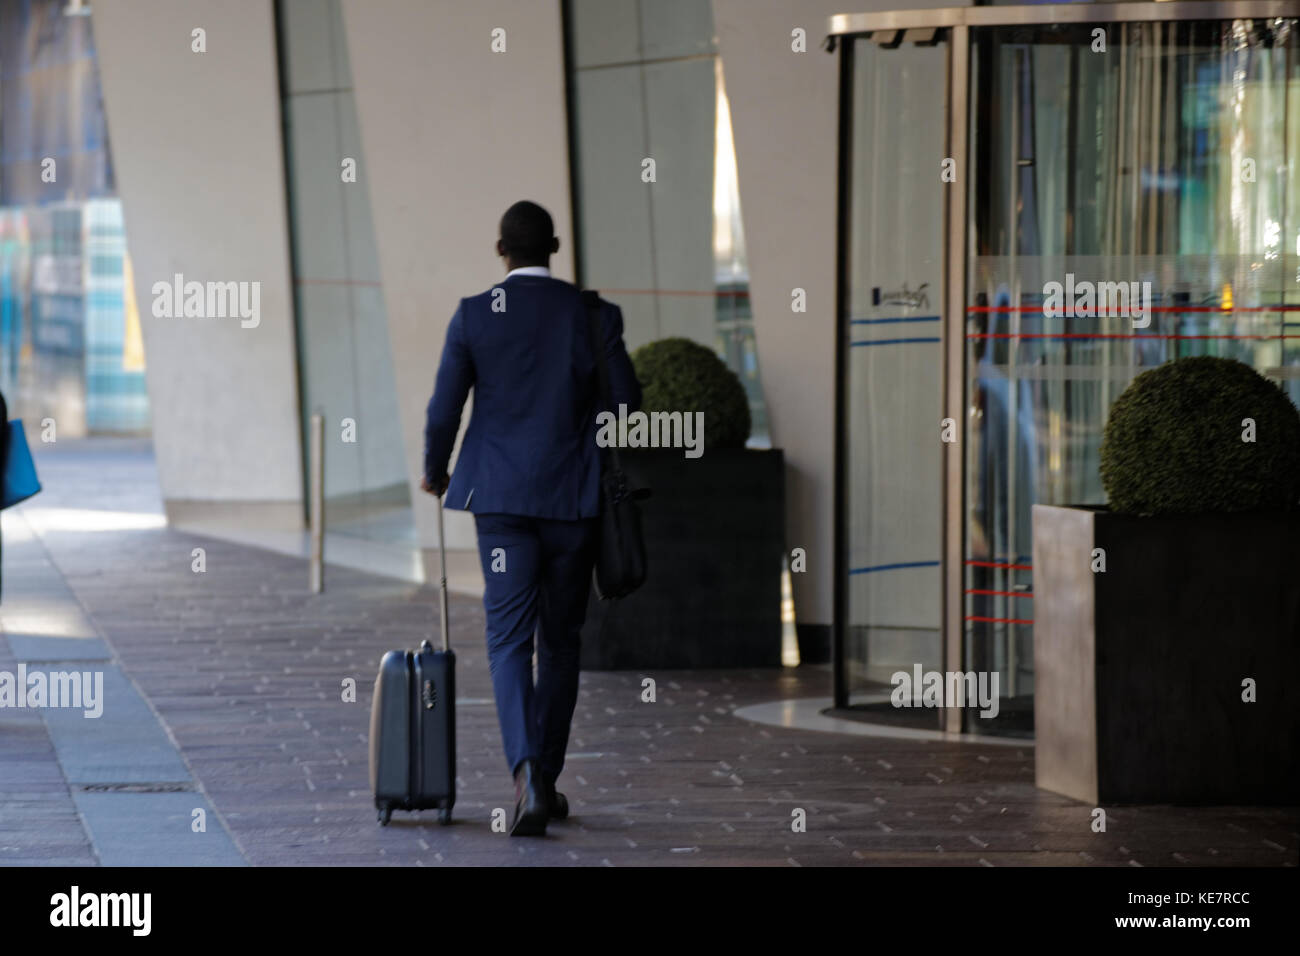 Homme noir dans un costume bleu avec sac valise trolley entrant sortant de l'entrée de la porte tournante de l'hôtel Radisson Blu Hotel, Glasgow Banque D'Images